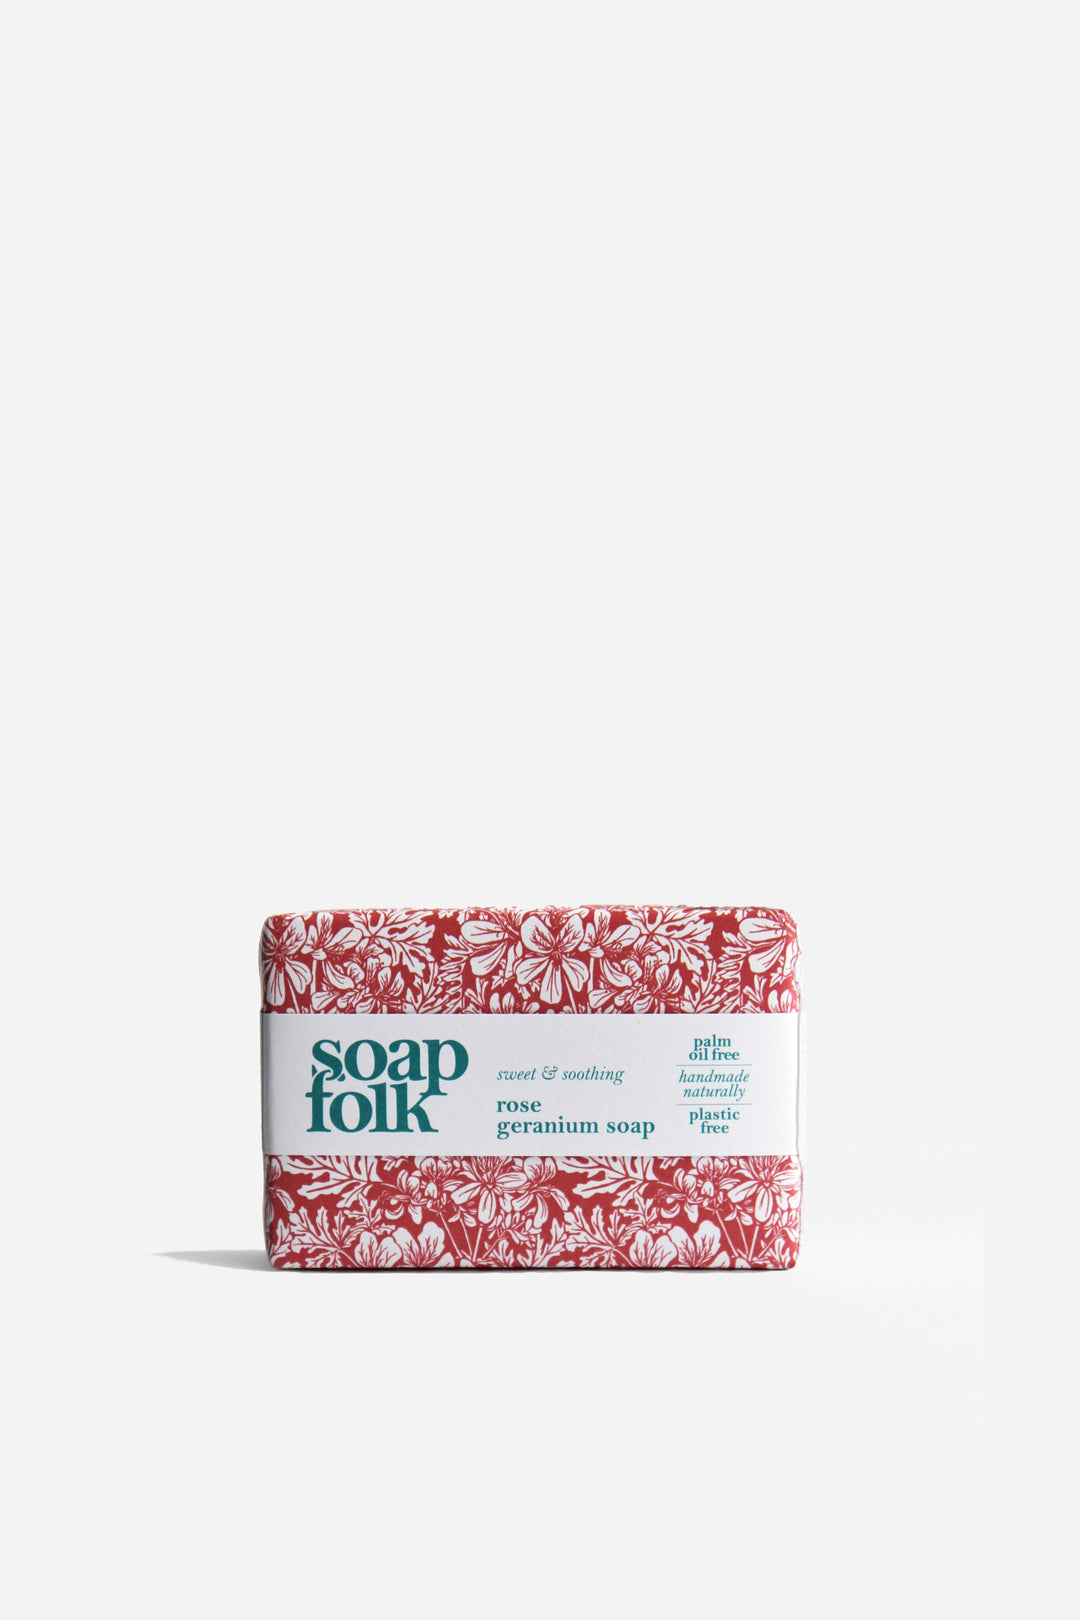 Soap Folk Rose Geranium Soap Bar